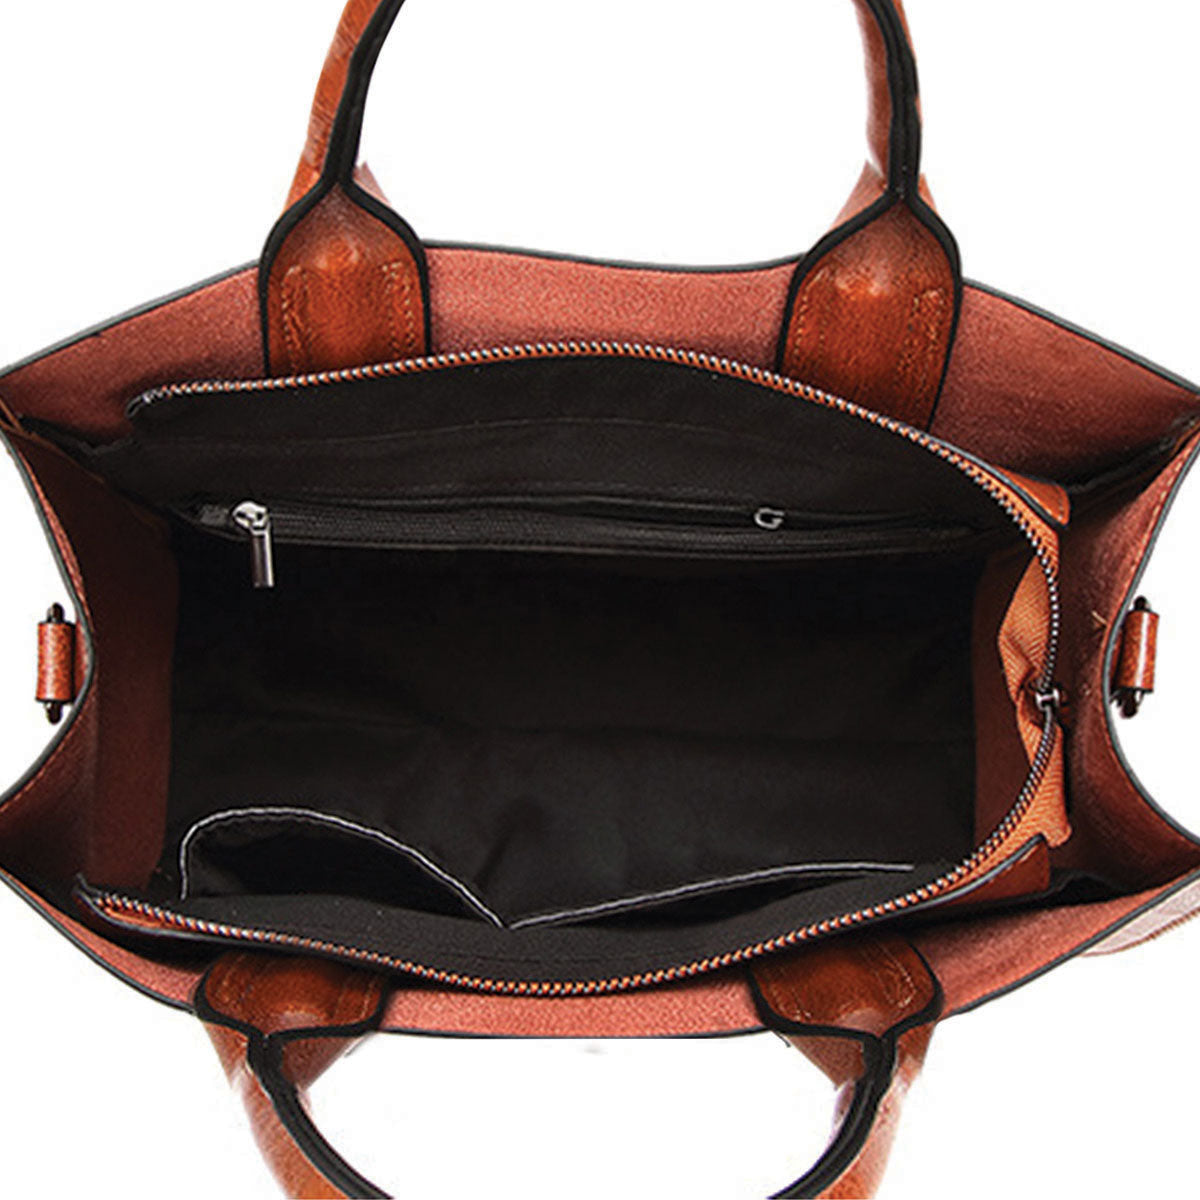 Ihr bester Begleiter – Shih Tzu Luxus-Handtasche V1